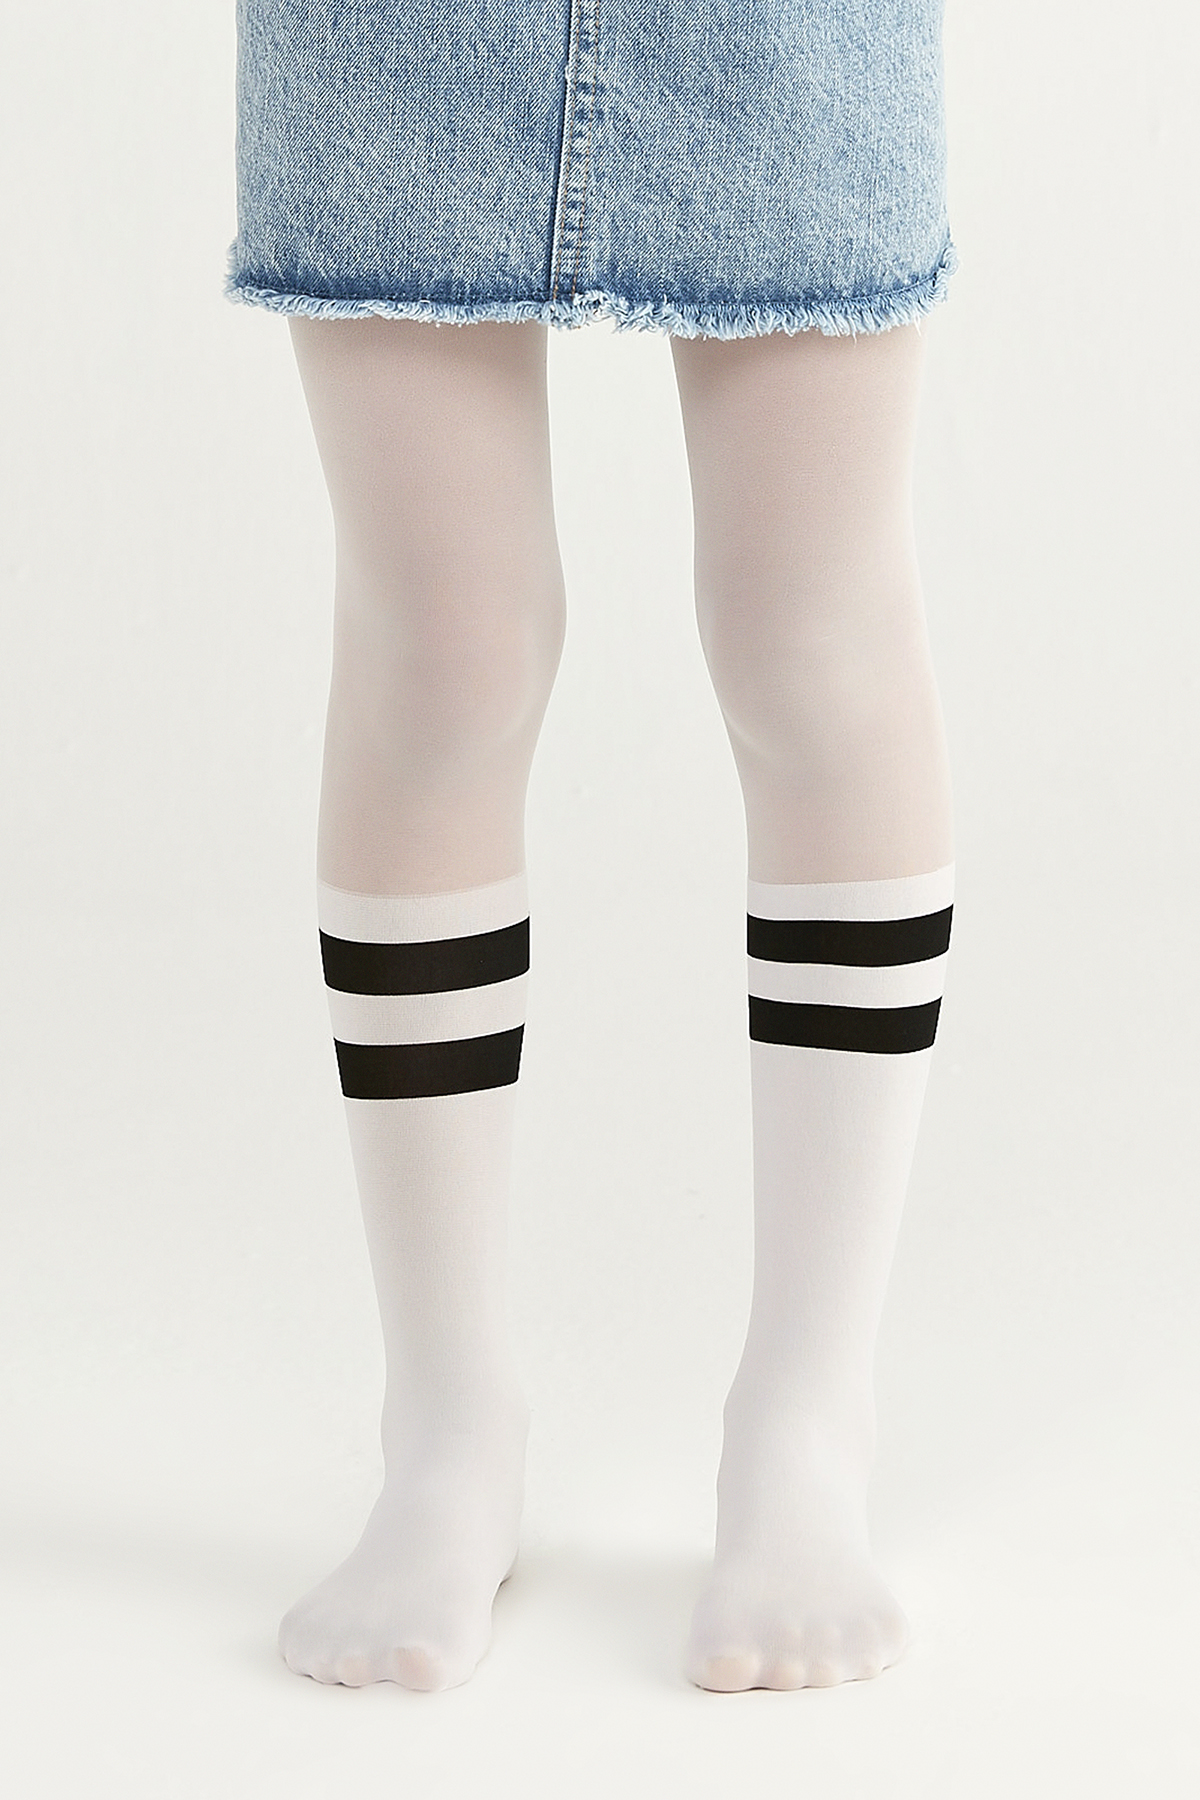 Penti Beyaz Kız Çocuk Siyah Çizgili Külotlu Çorap. 1